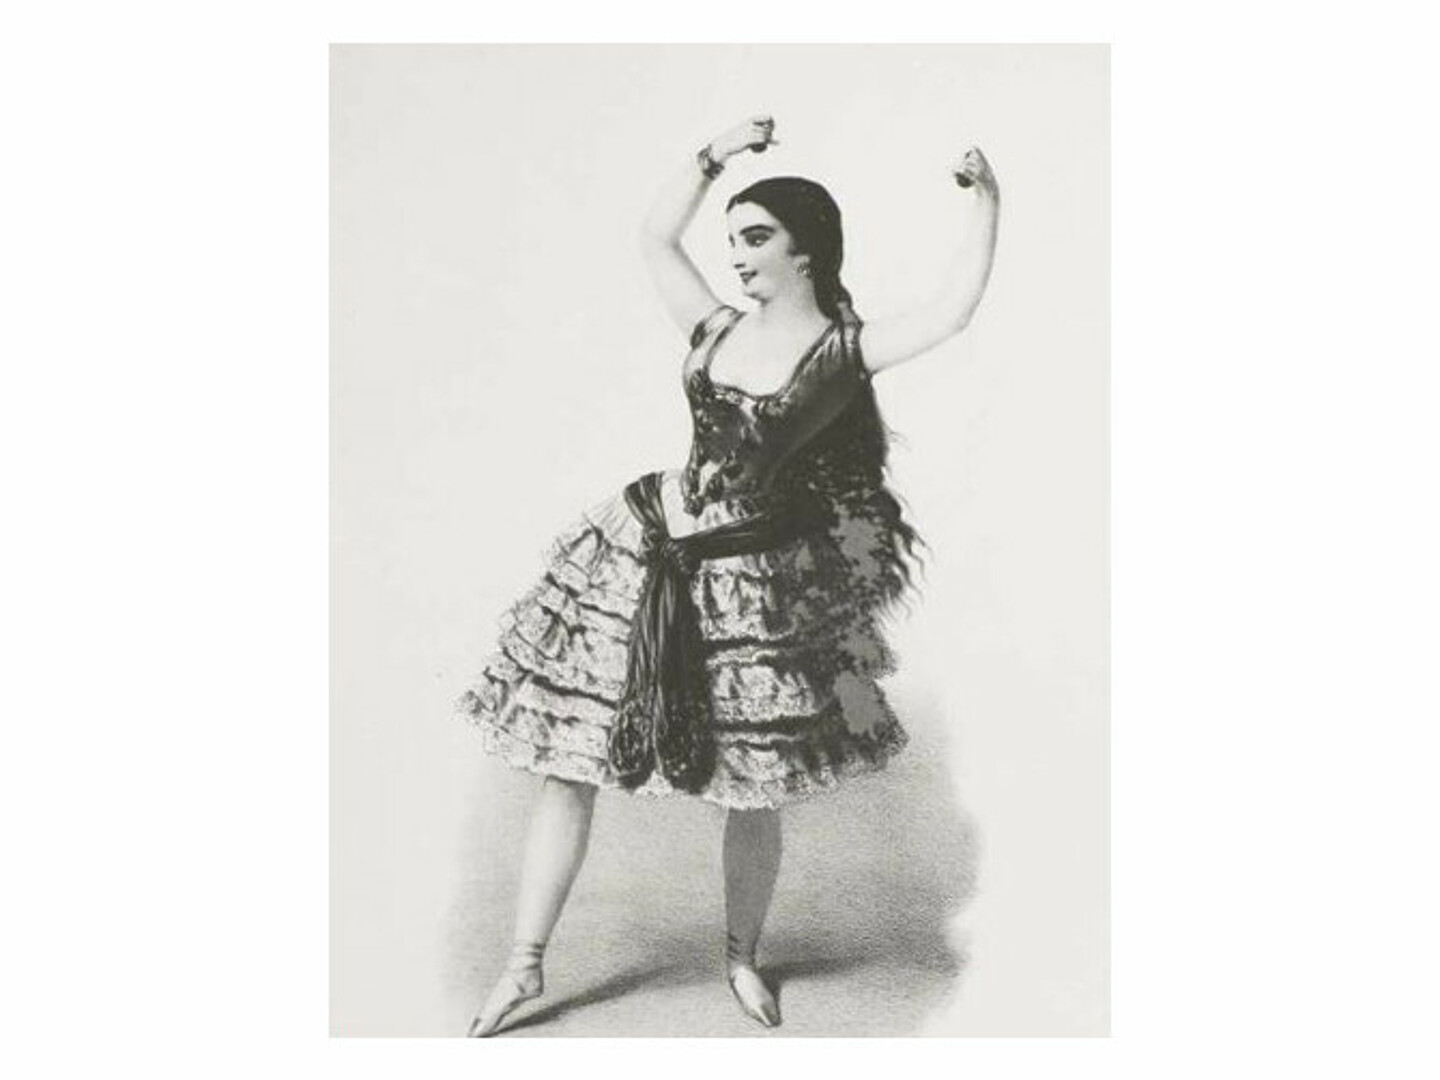 Schwarz-Weiß-Stich der Tänzerin Pepita de Oliva, wie sie den Olé tanzt.